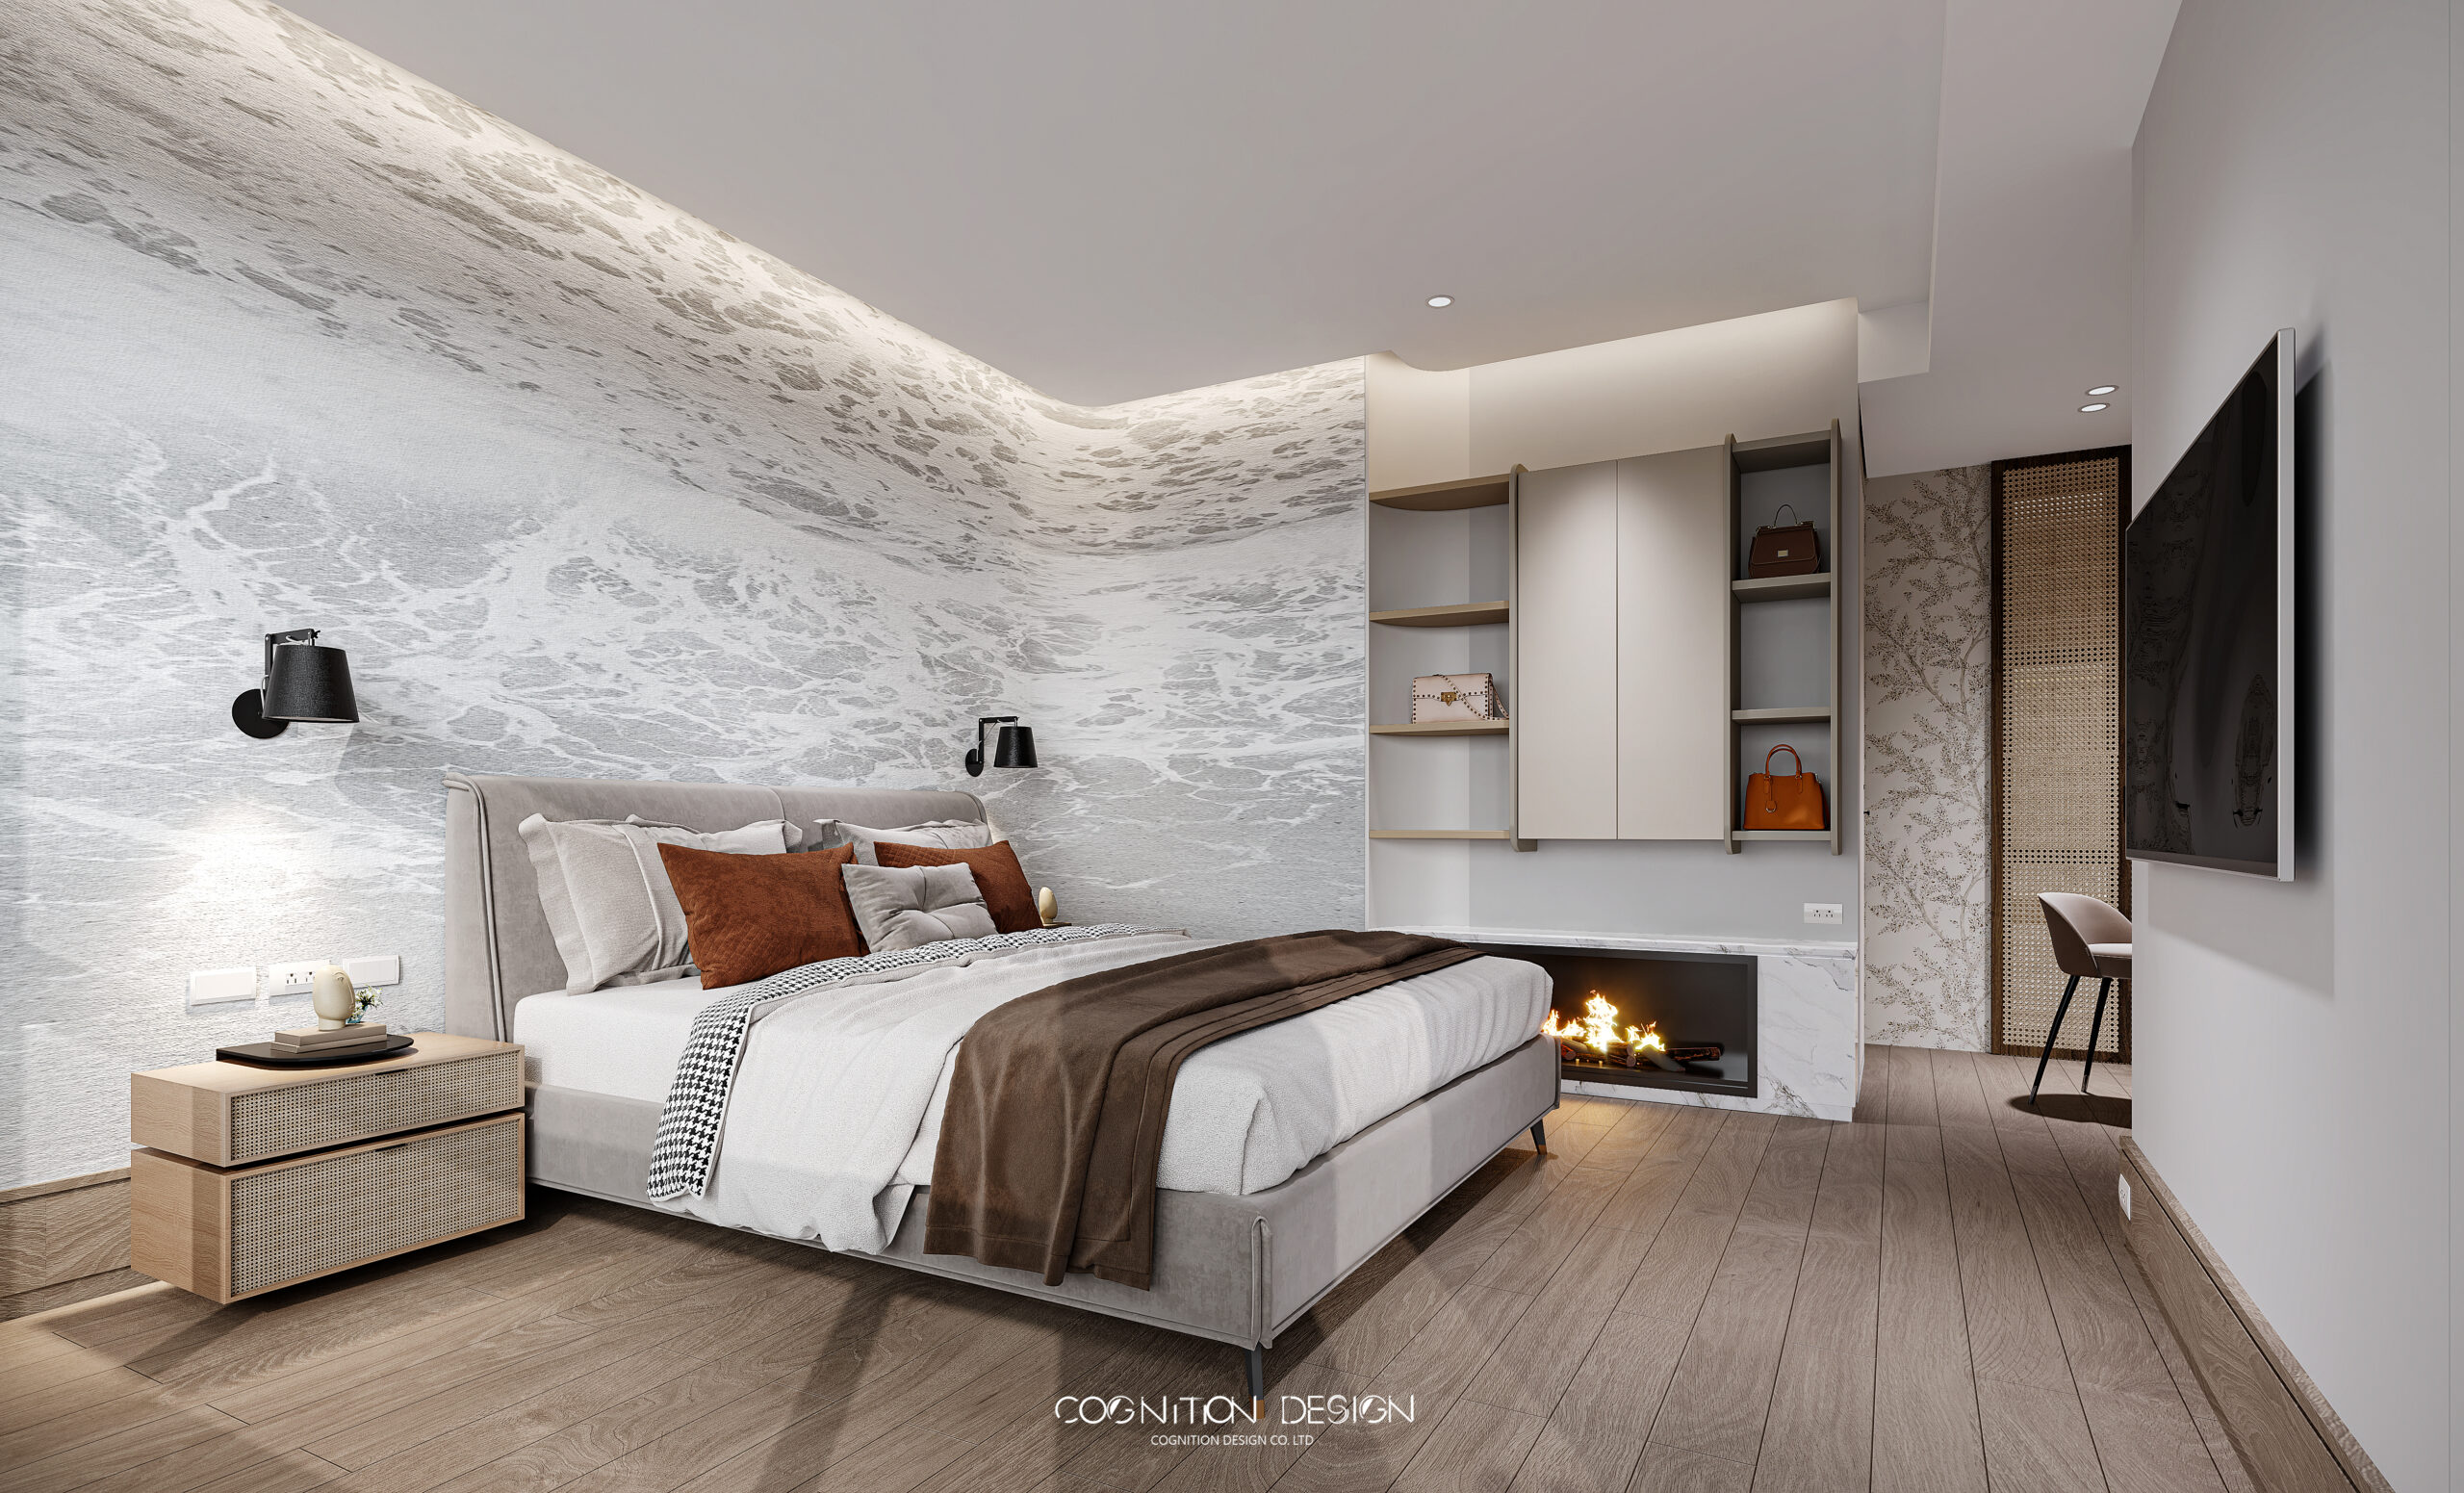 在臥室的空間設計中加入自然的藤編材質的家具以及淺色木地板，增加整體空間的自然感